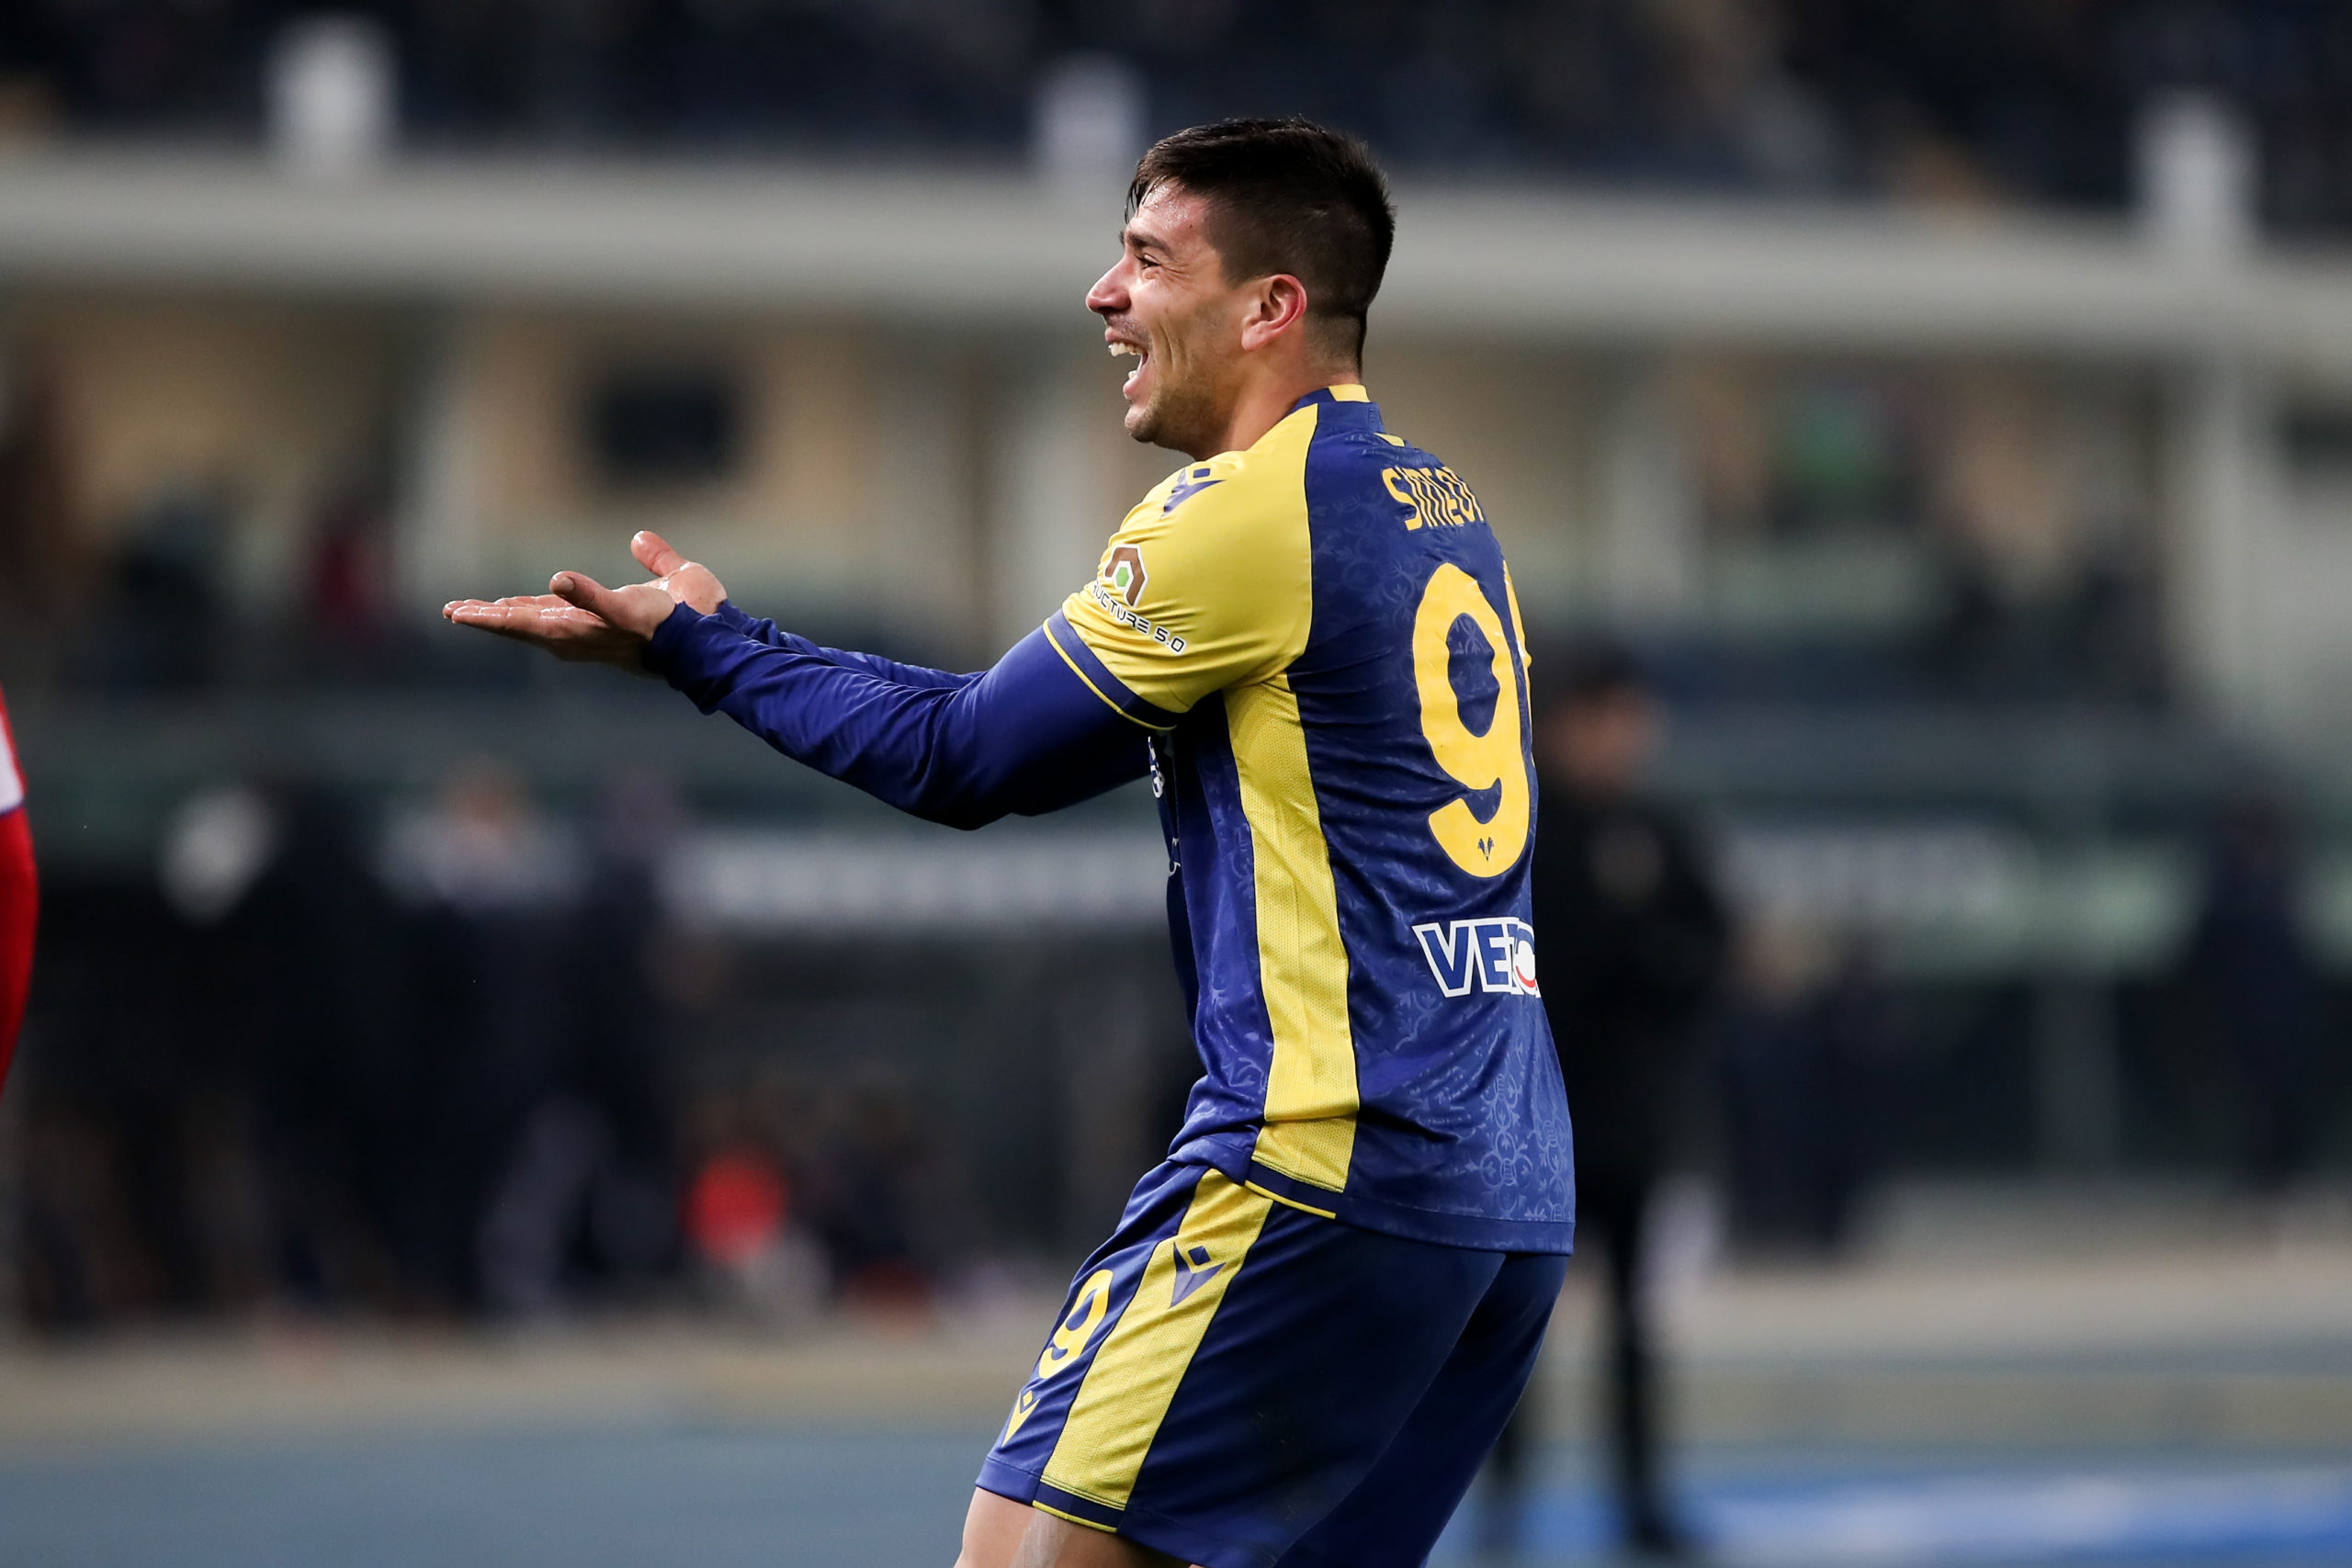 SOCCER: DEC 22 Serie A - Verona v Fiorentina